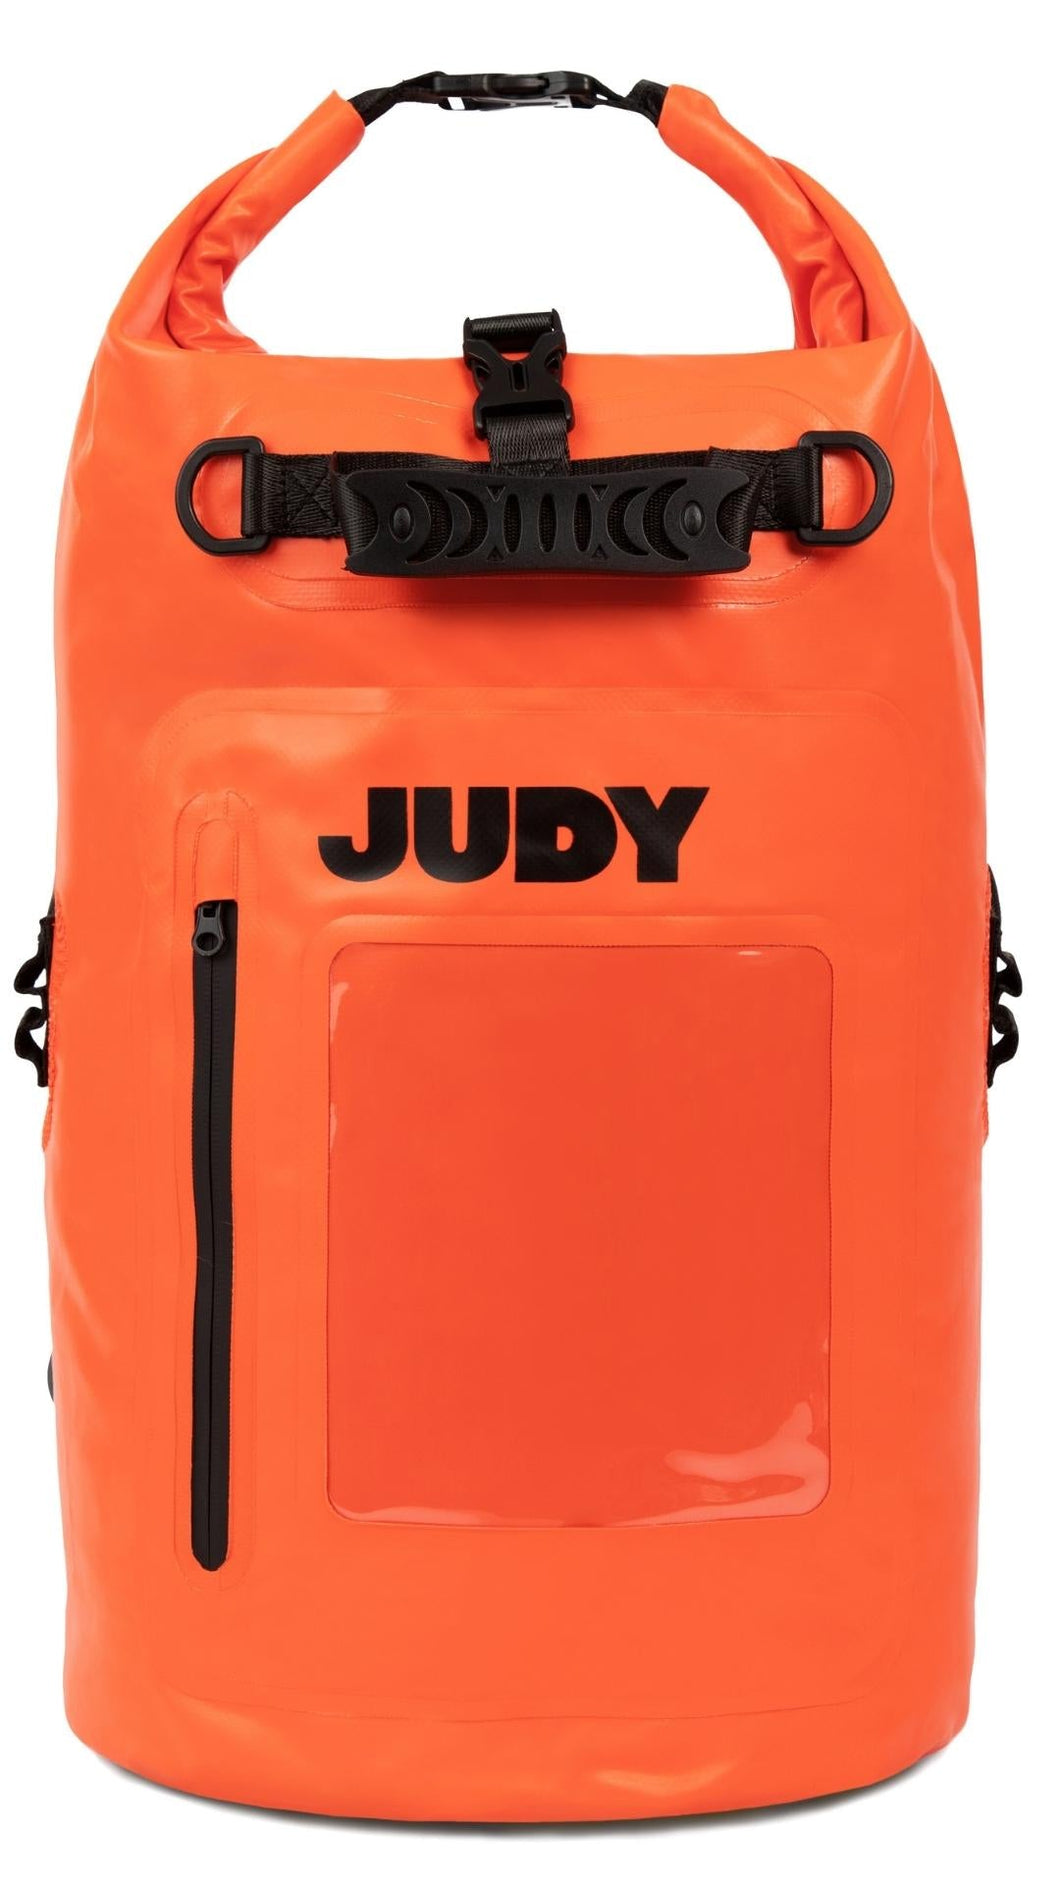 Judy Mover Max Bag